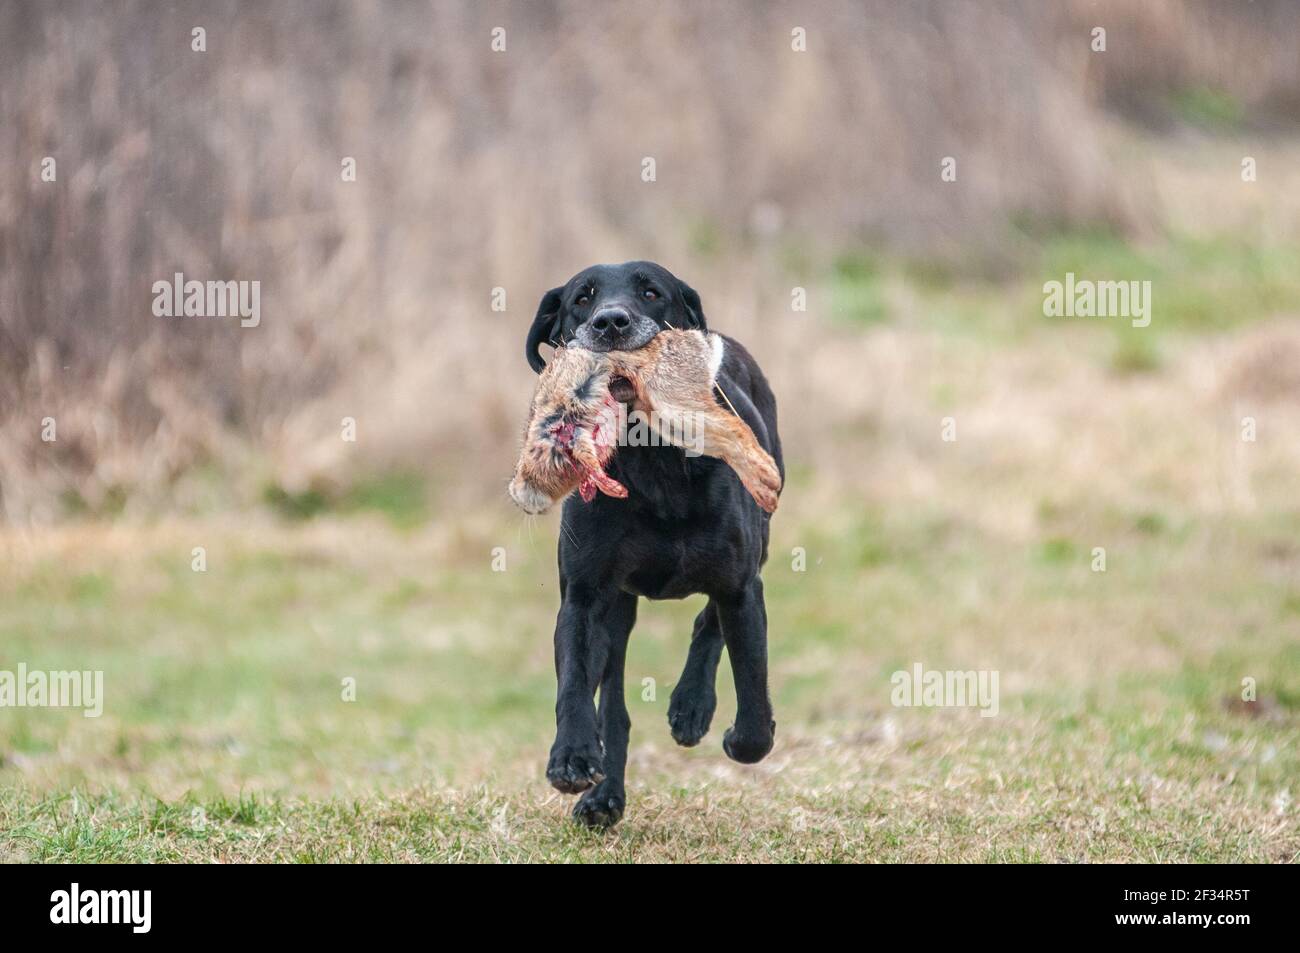 Le Old Black Labrador Retriever récupère un lapin mort pendant un essai sur le terrain Banque D'Images